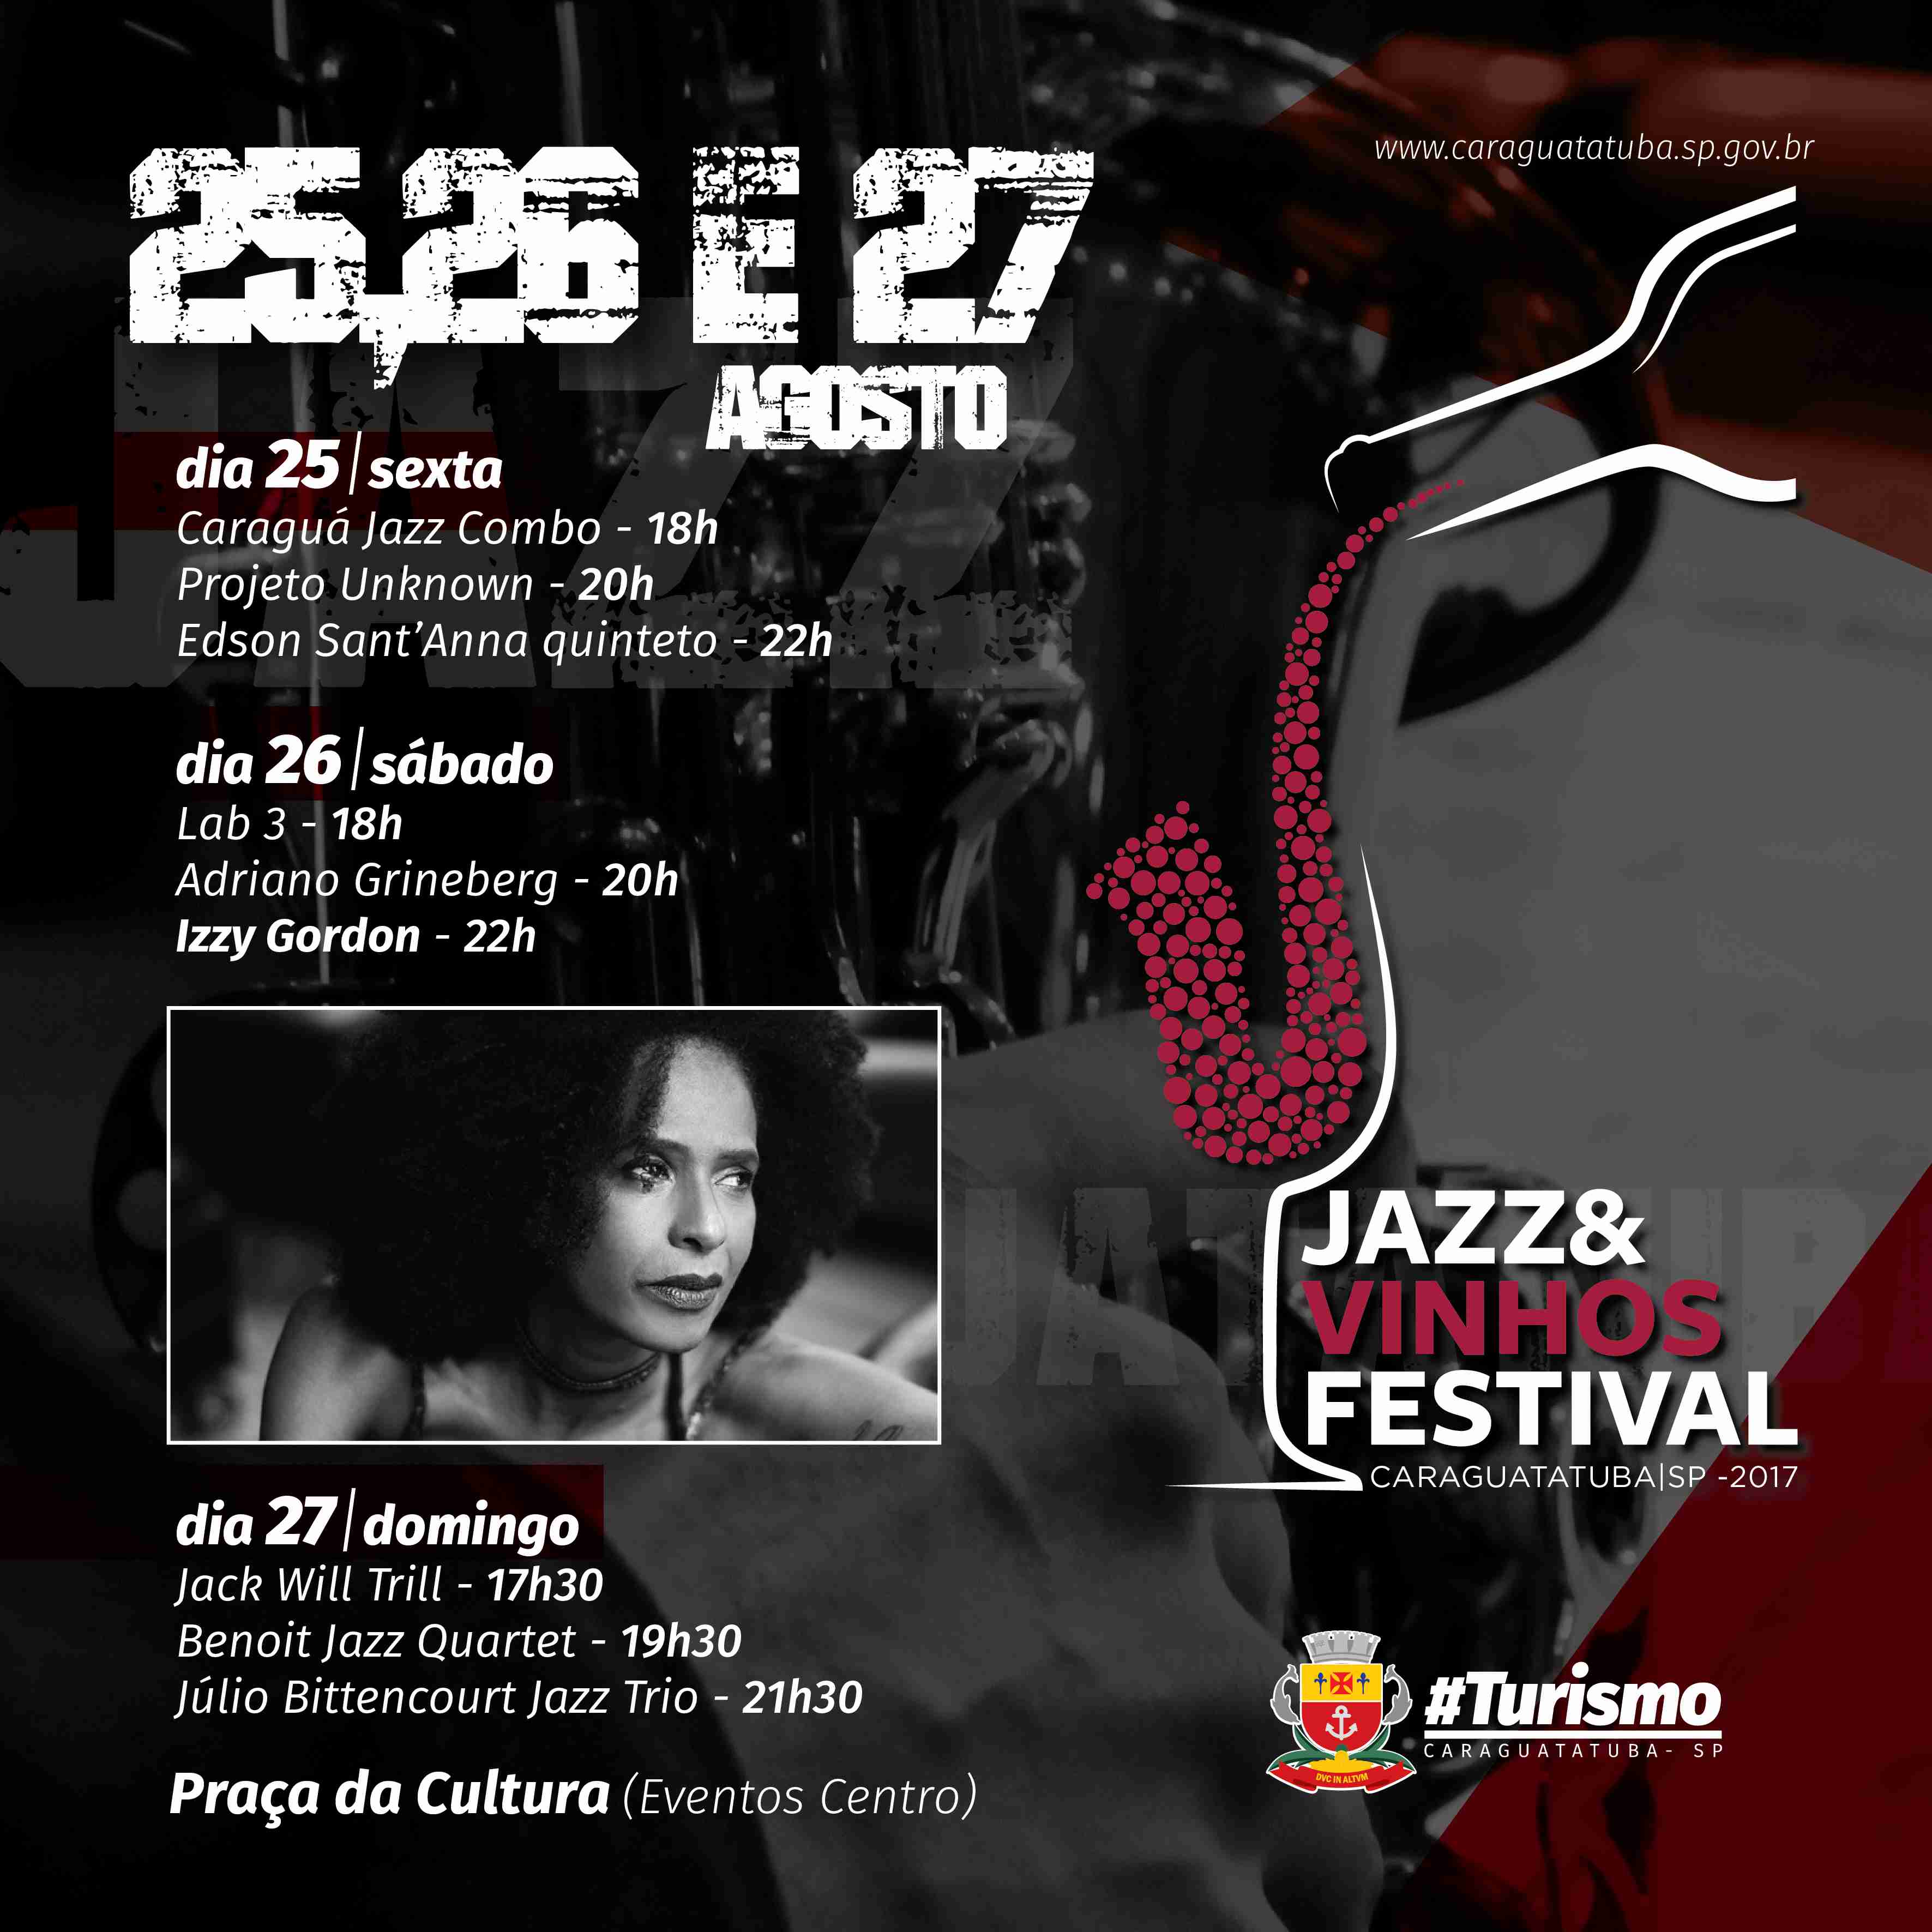 Tudo pronto para o “Jazz e Vinhos Festival” que começa nesta sexta-feira em Caraguatatuba